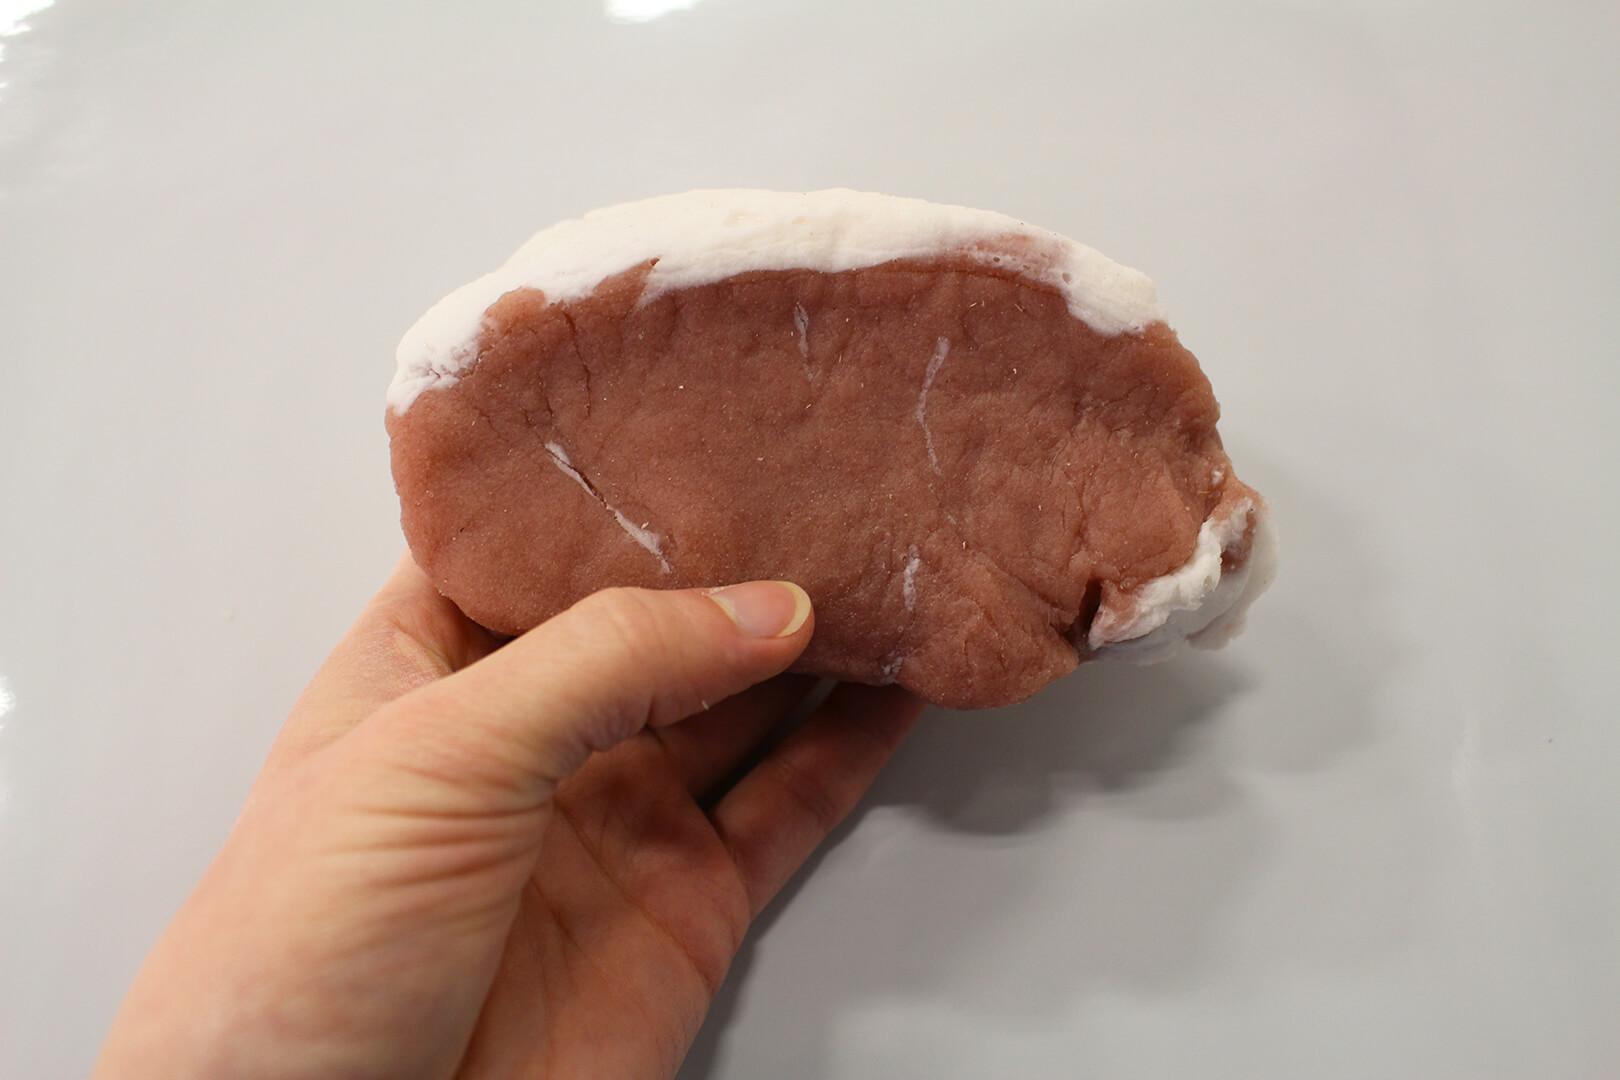 Hand holding an artificial pork chop